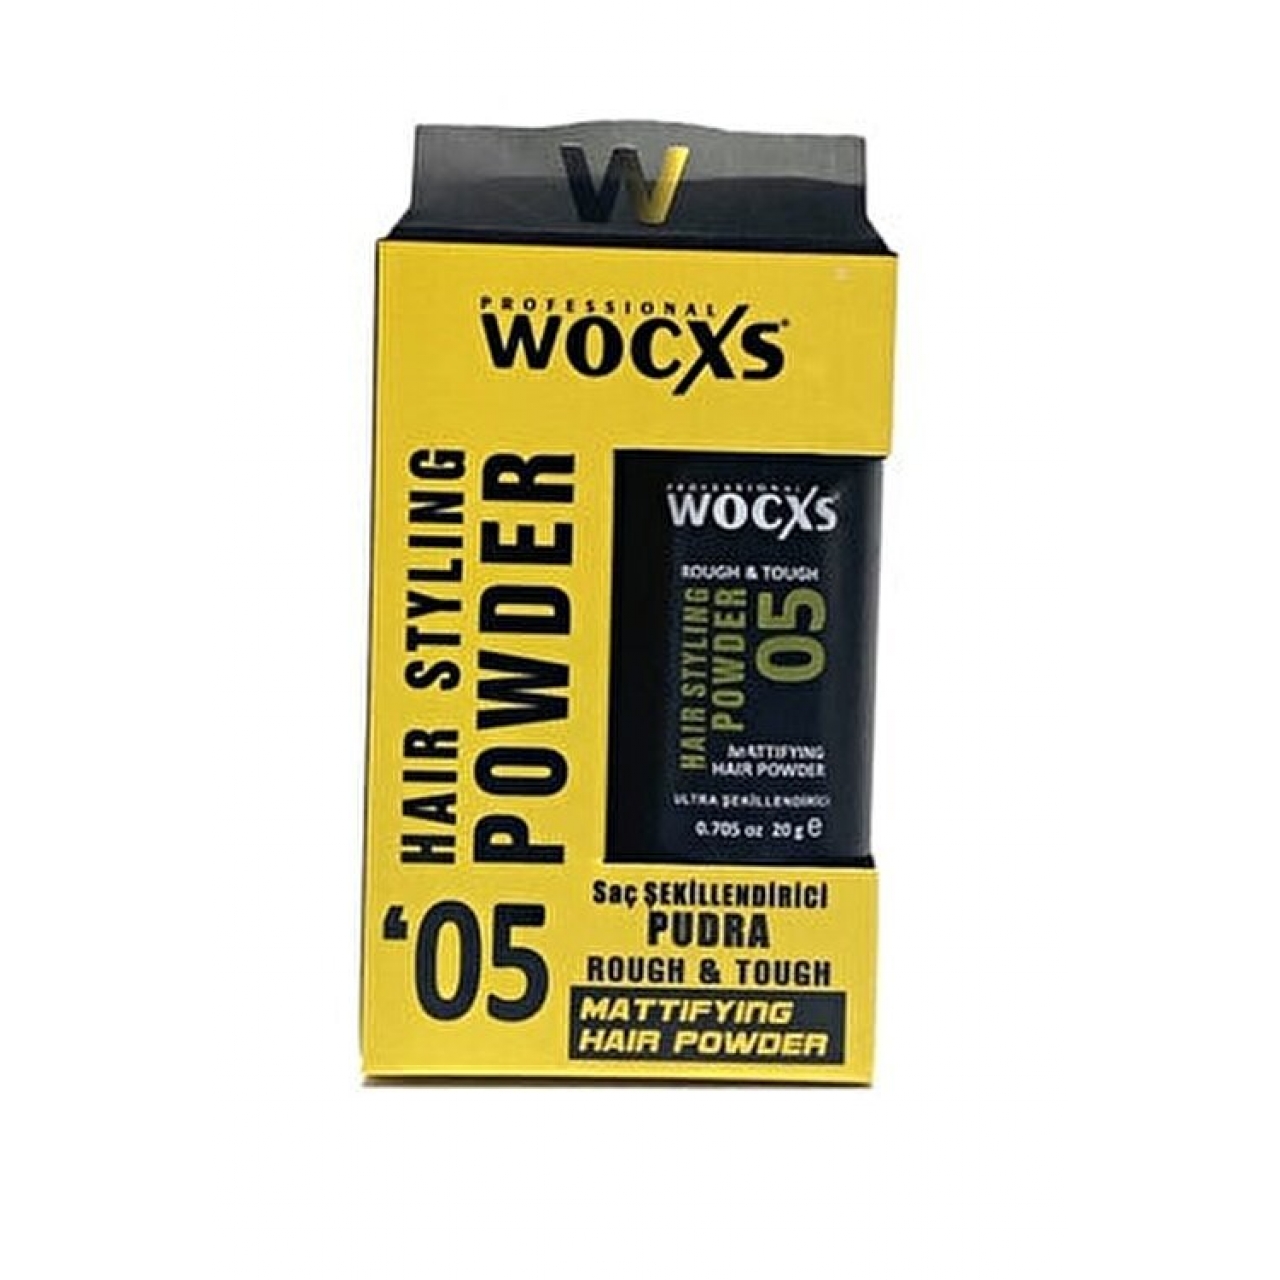 Wocxs Saç Şekillendirici Pudra Wax 05 20 gr